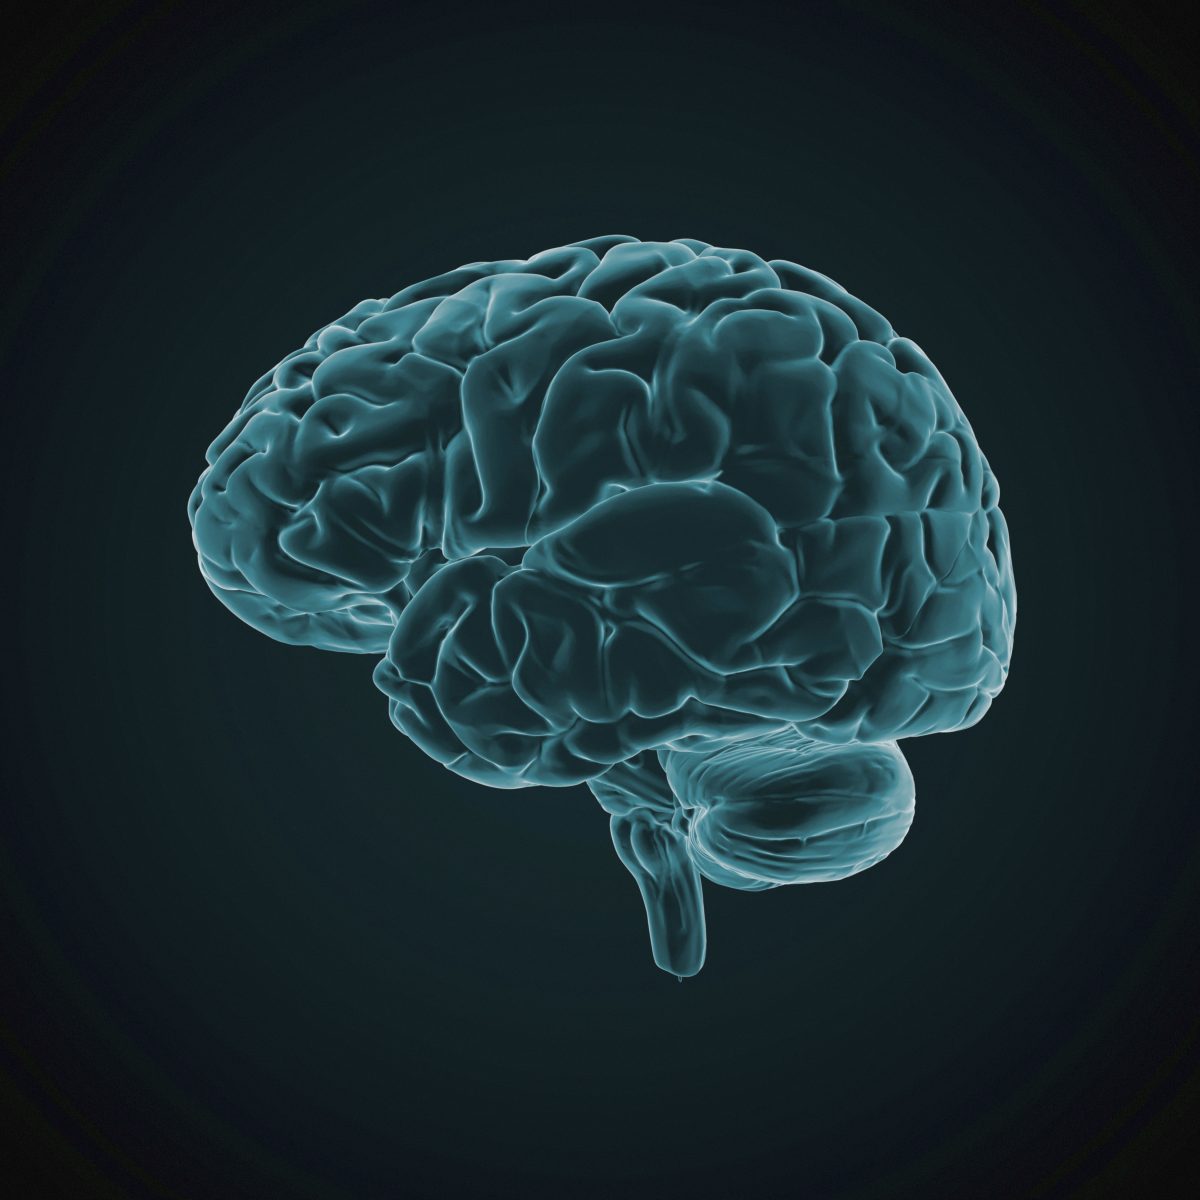 How to identify a brain injury